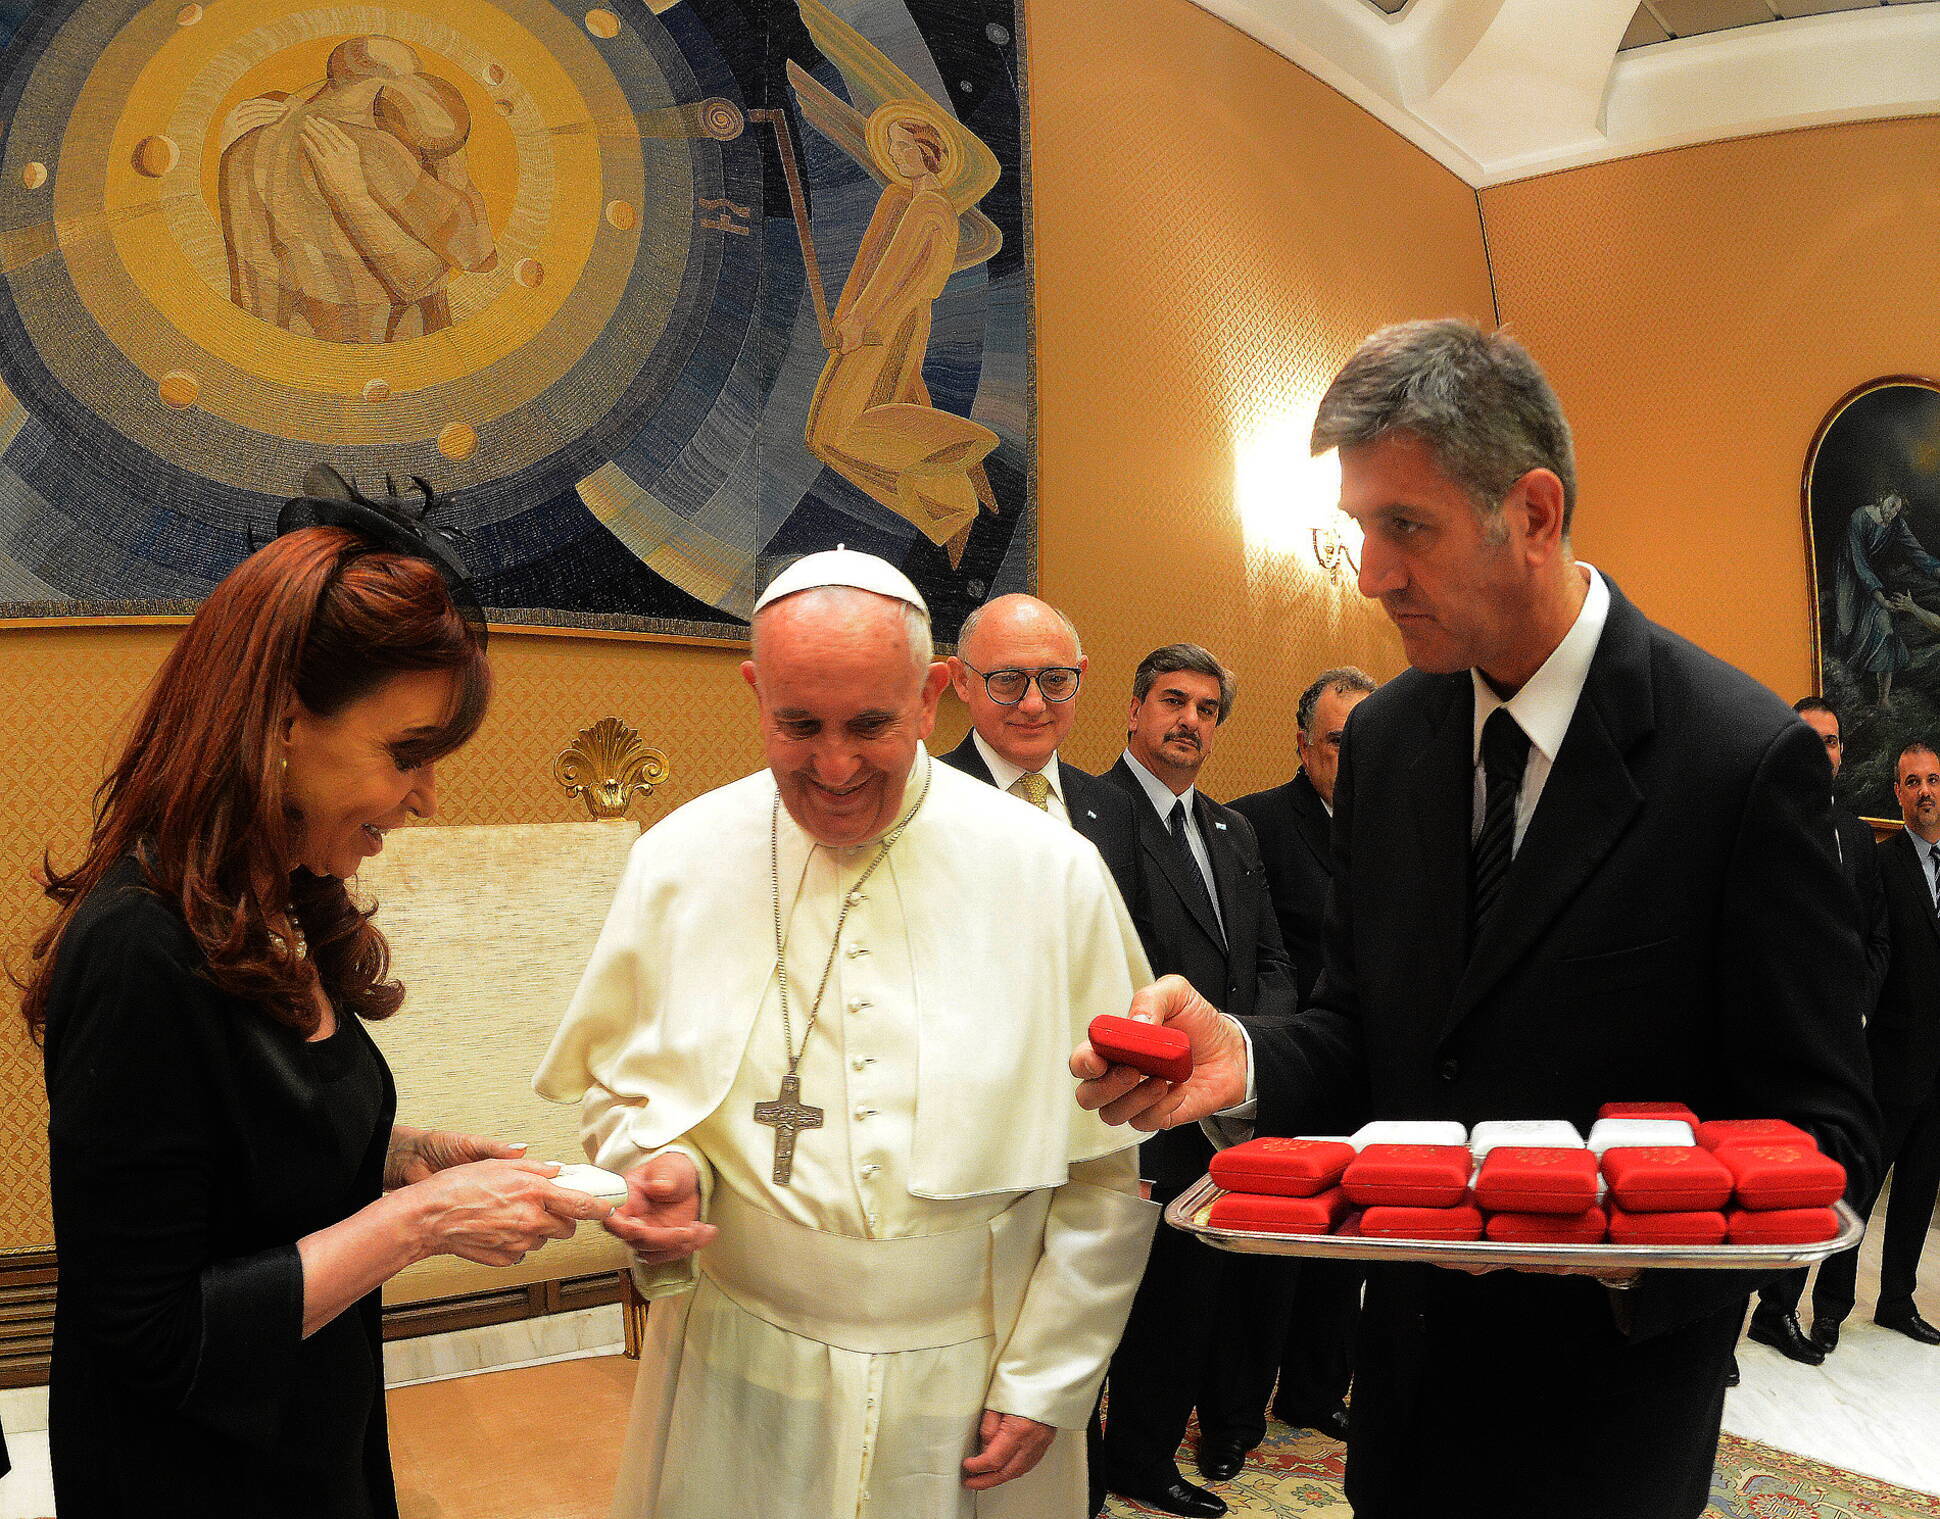 La Presidenta Cristina Fernández y el Sumo Pontífice intercambiaron obsequios luego de la reunión que mantuvieron en el Vaticano.